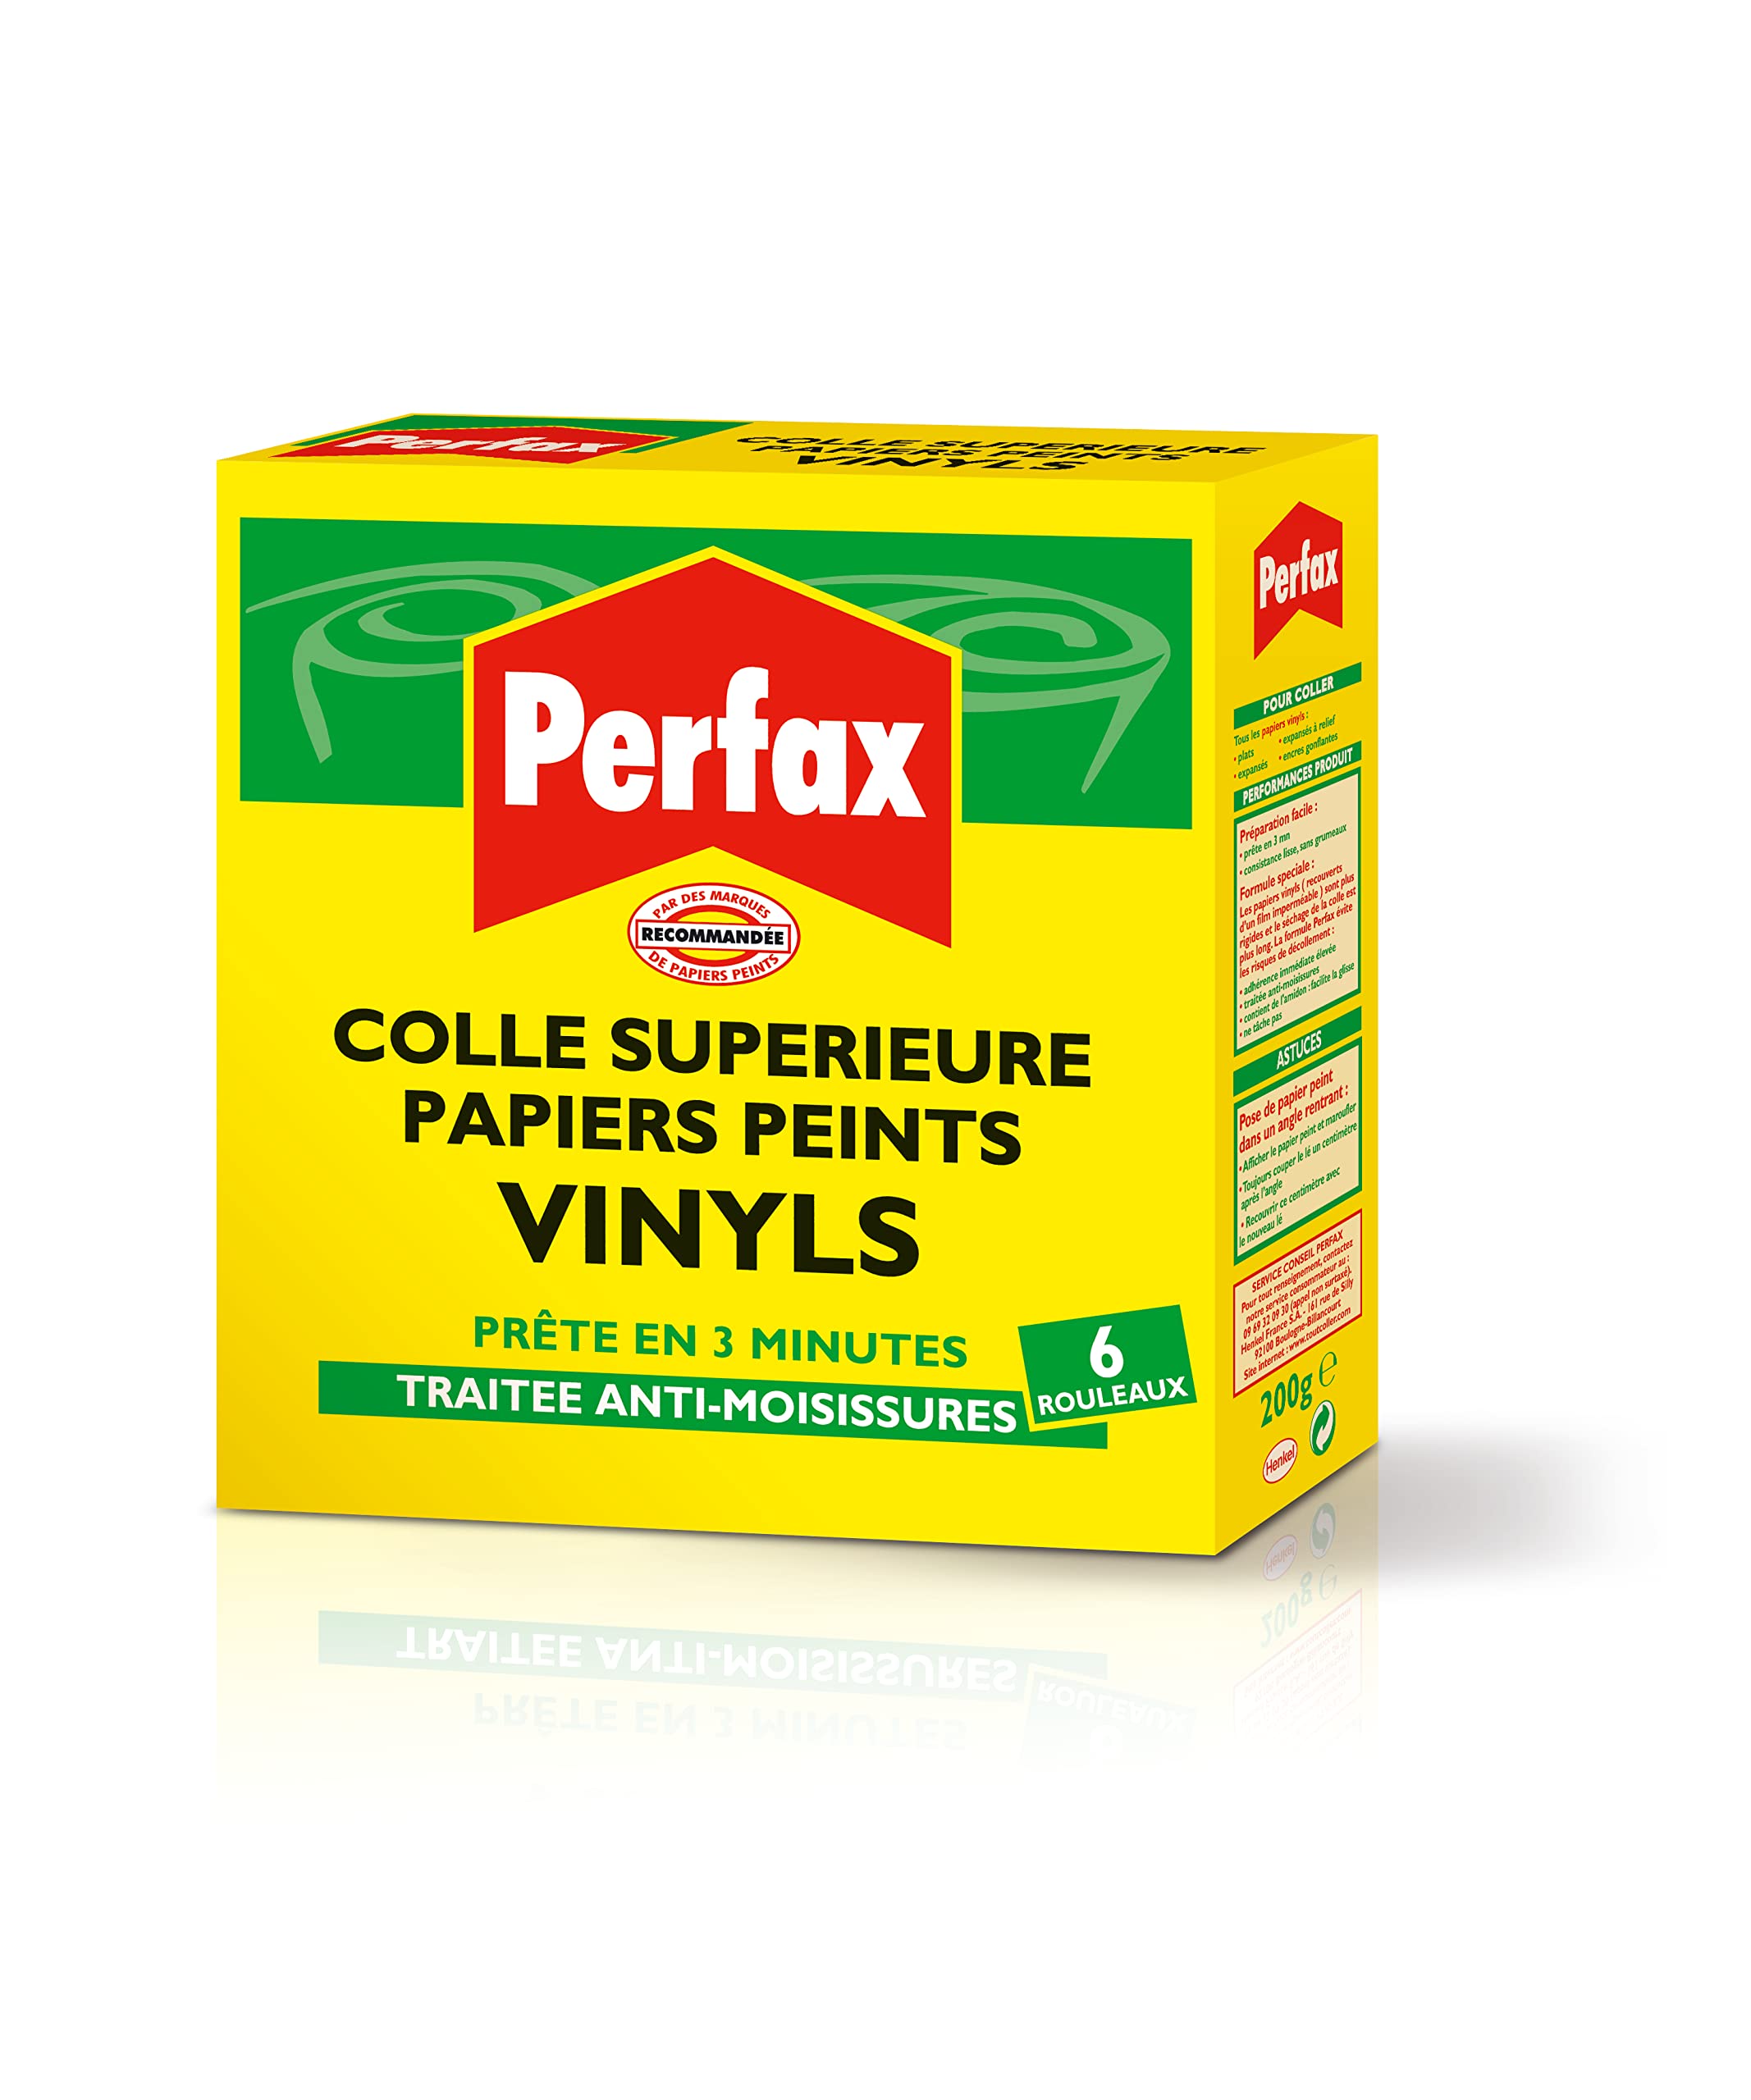 chic  PERFAX Colle Papiers Peints Vinyls , colle à diluer pour papiers peints vinyls - Paquet 200g pour 6 rouleaux YWF2b2uIc tout pour vous